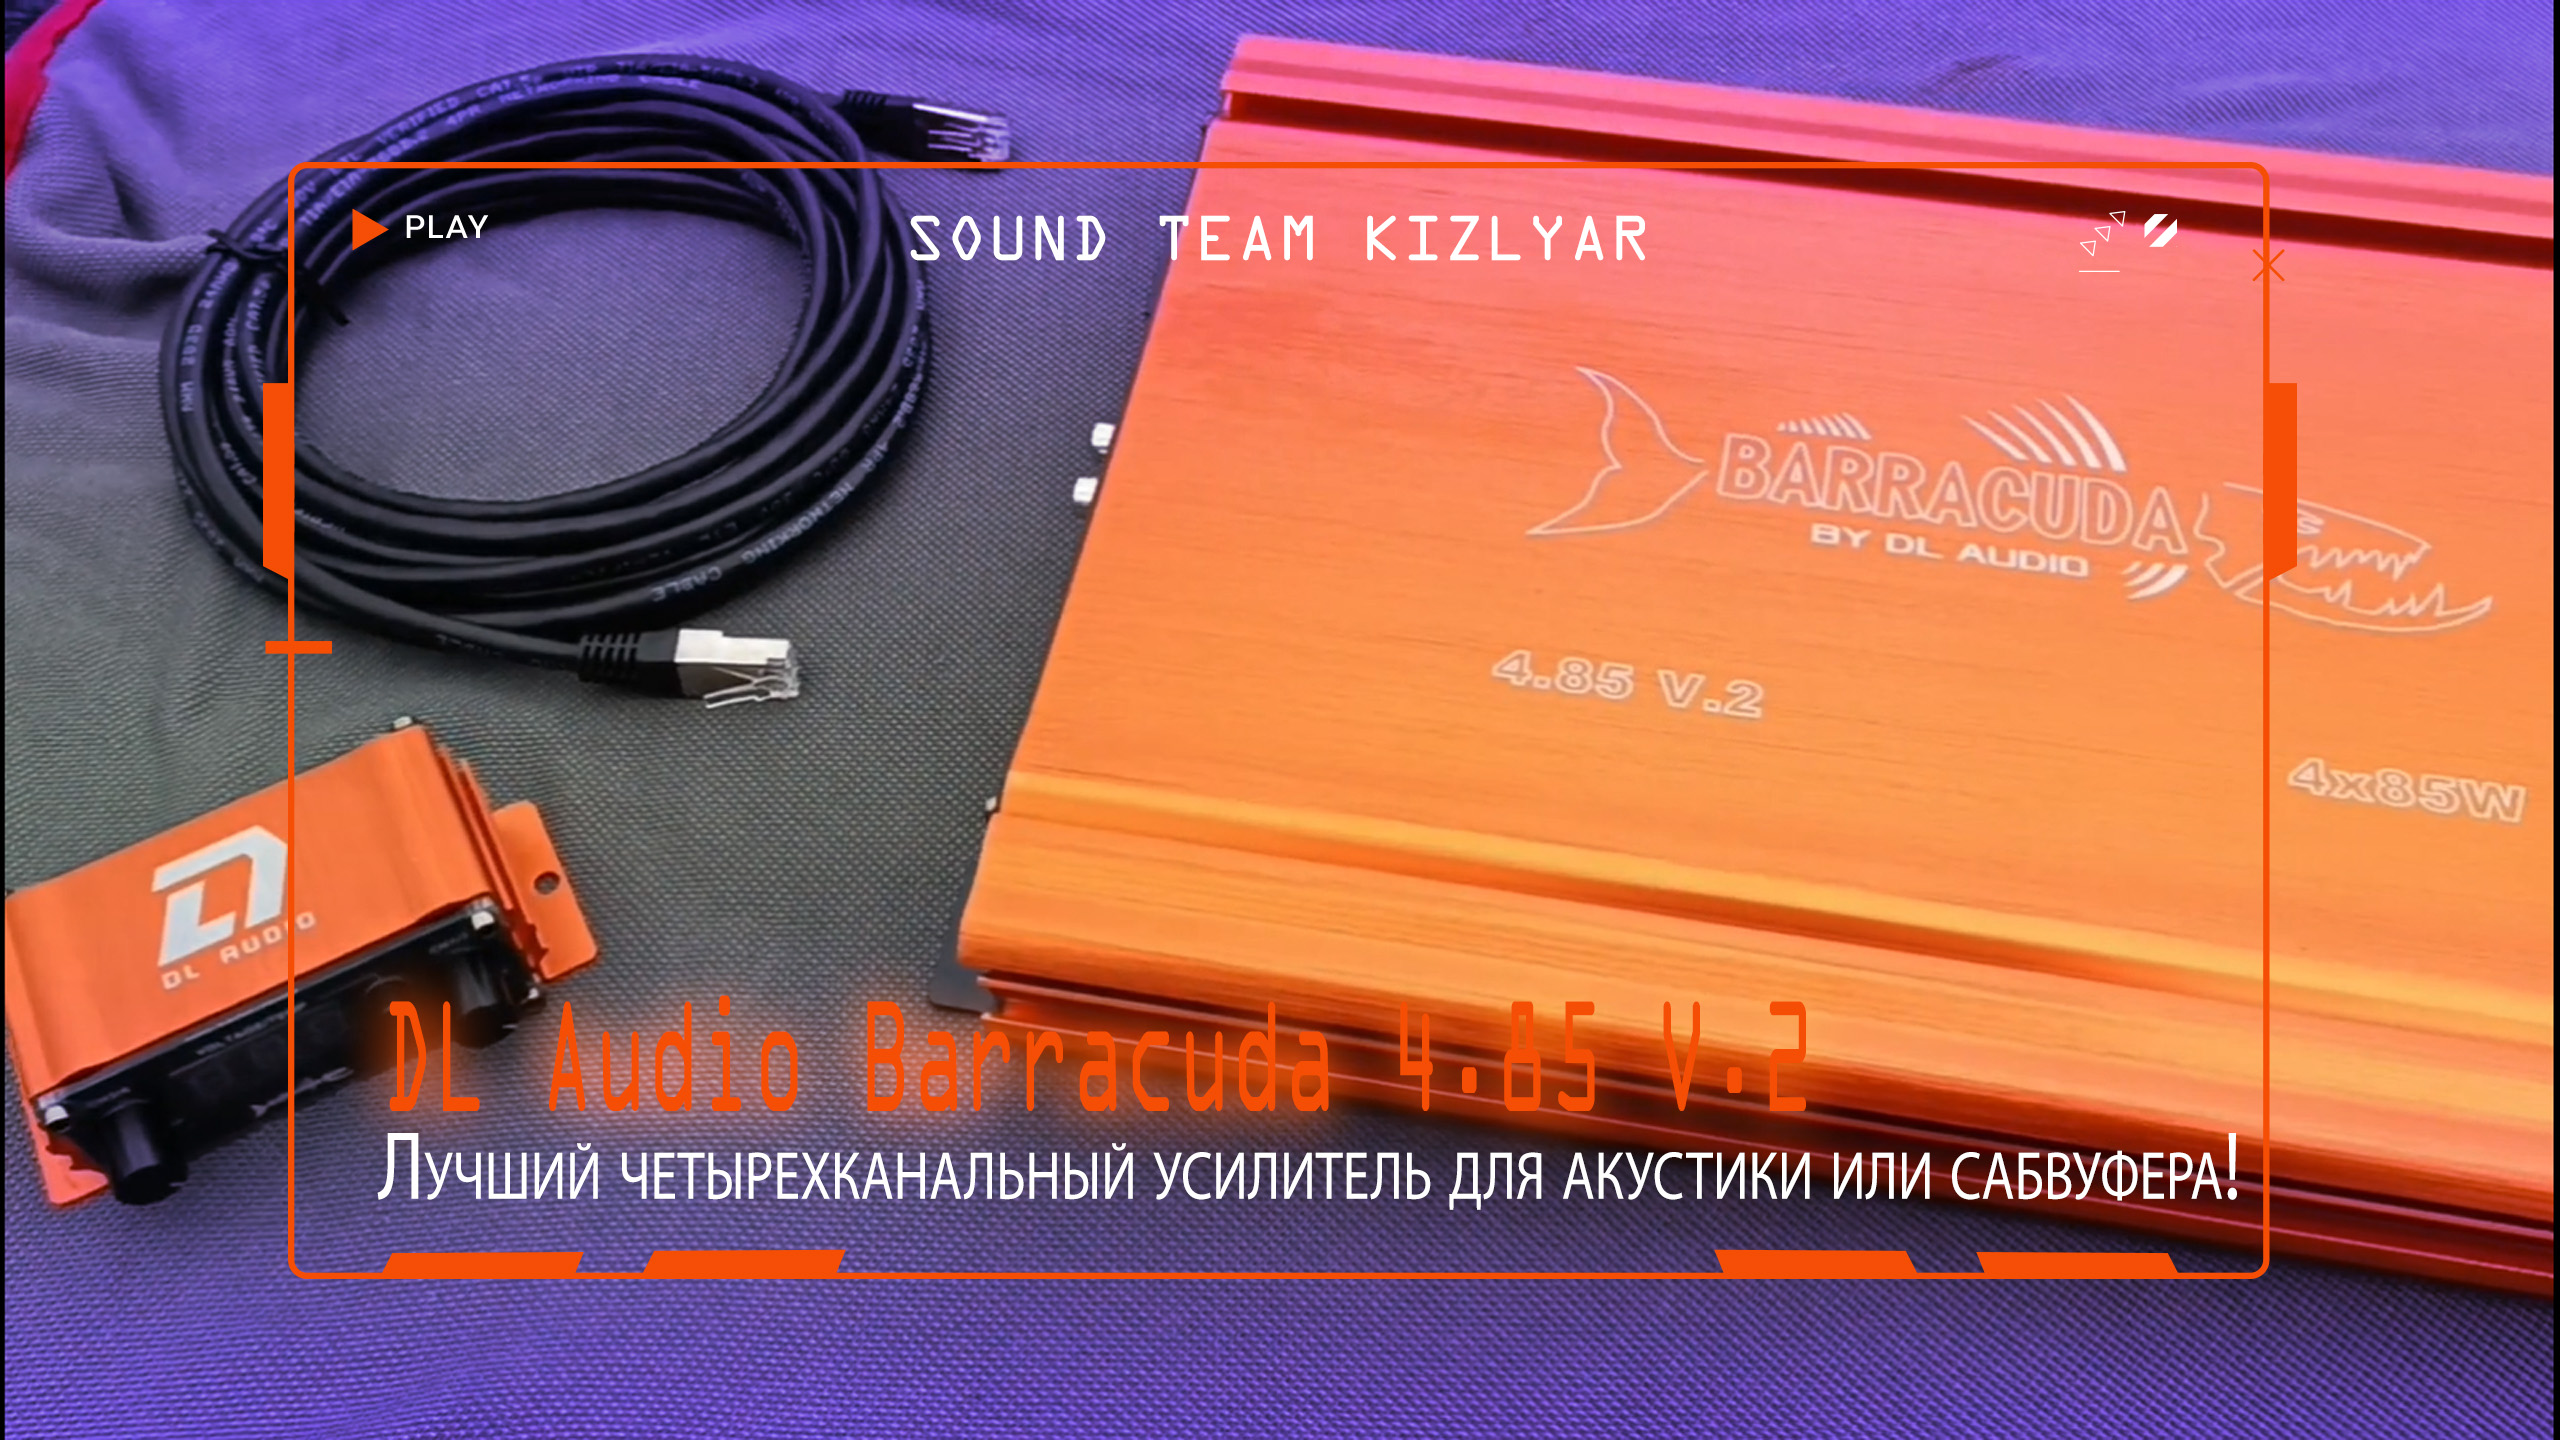 Лучший четырехканальный усилитель для акустики или сабвуфера! DL Audio Barracuda 4.85 V.2